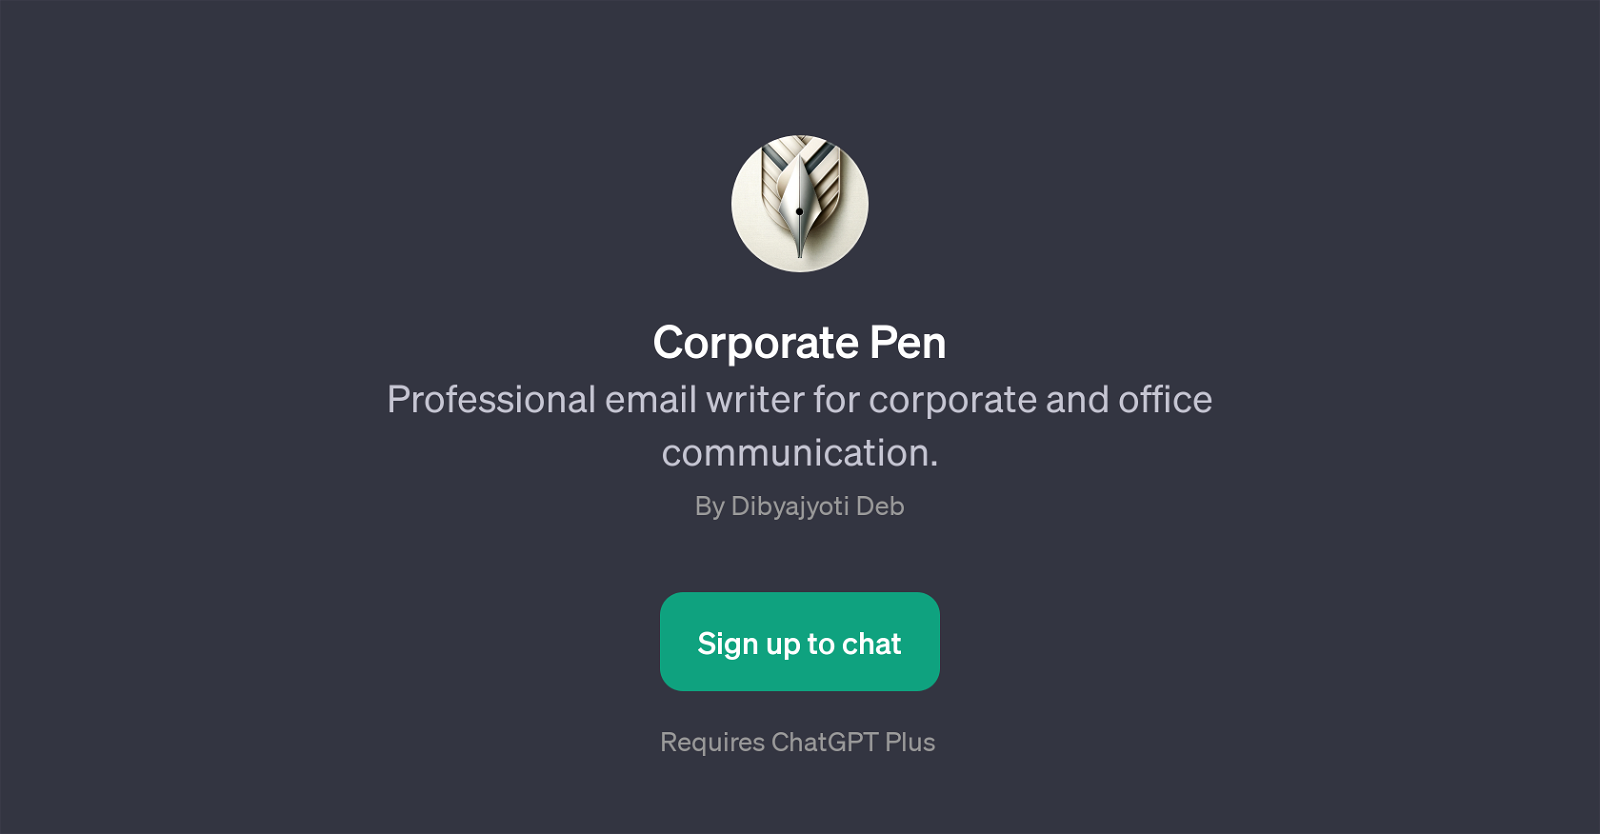 Corporate Pen website